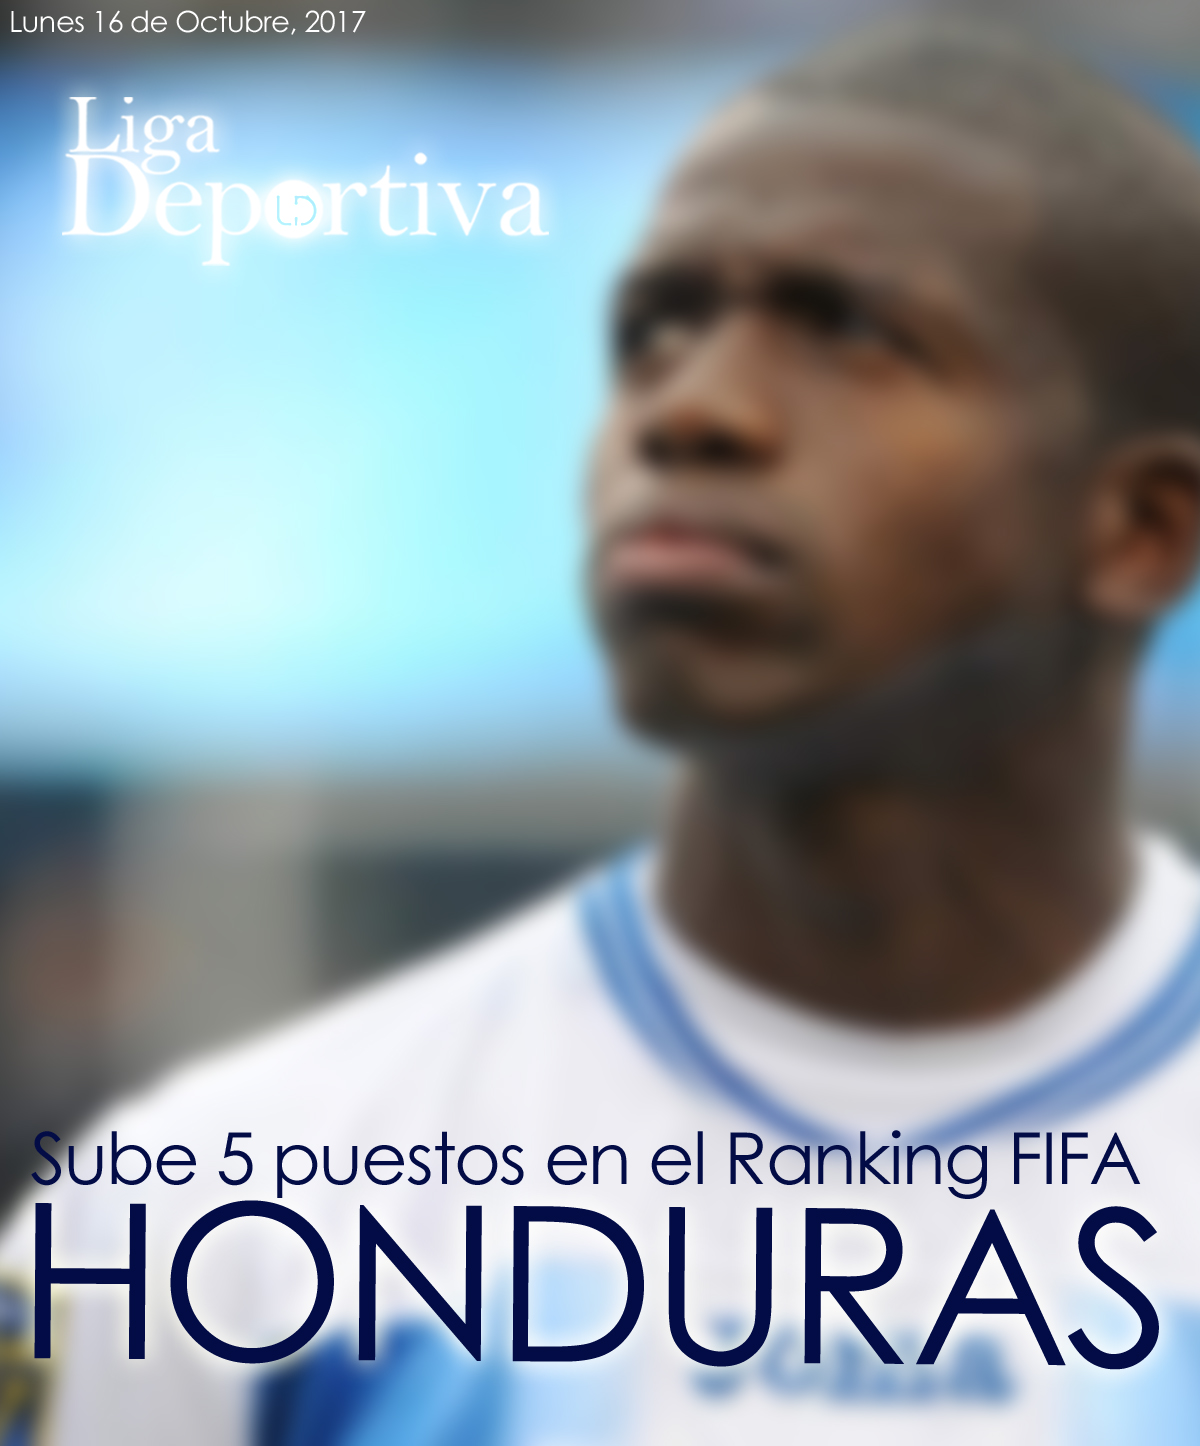 Honduras sube 5 puestos en el Ranking FIFA 